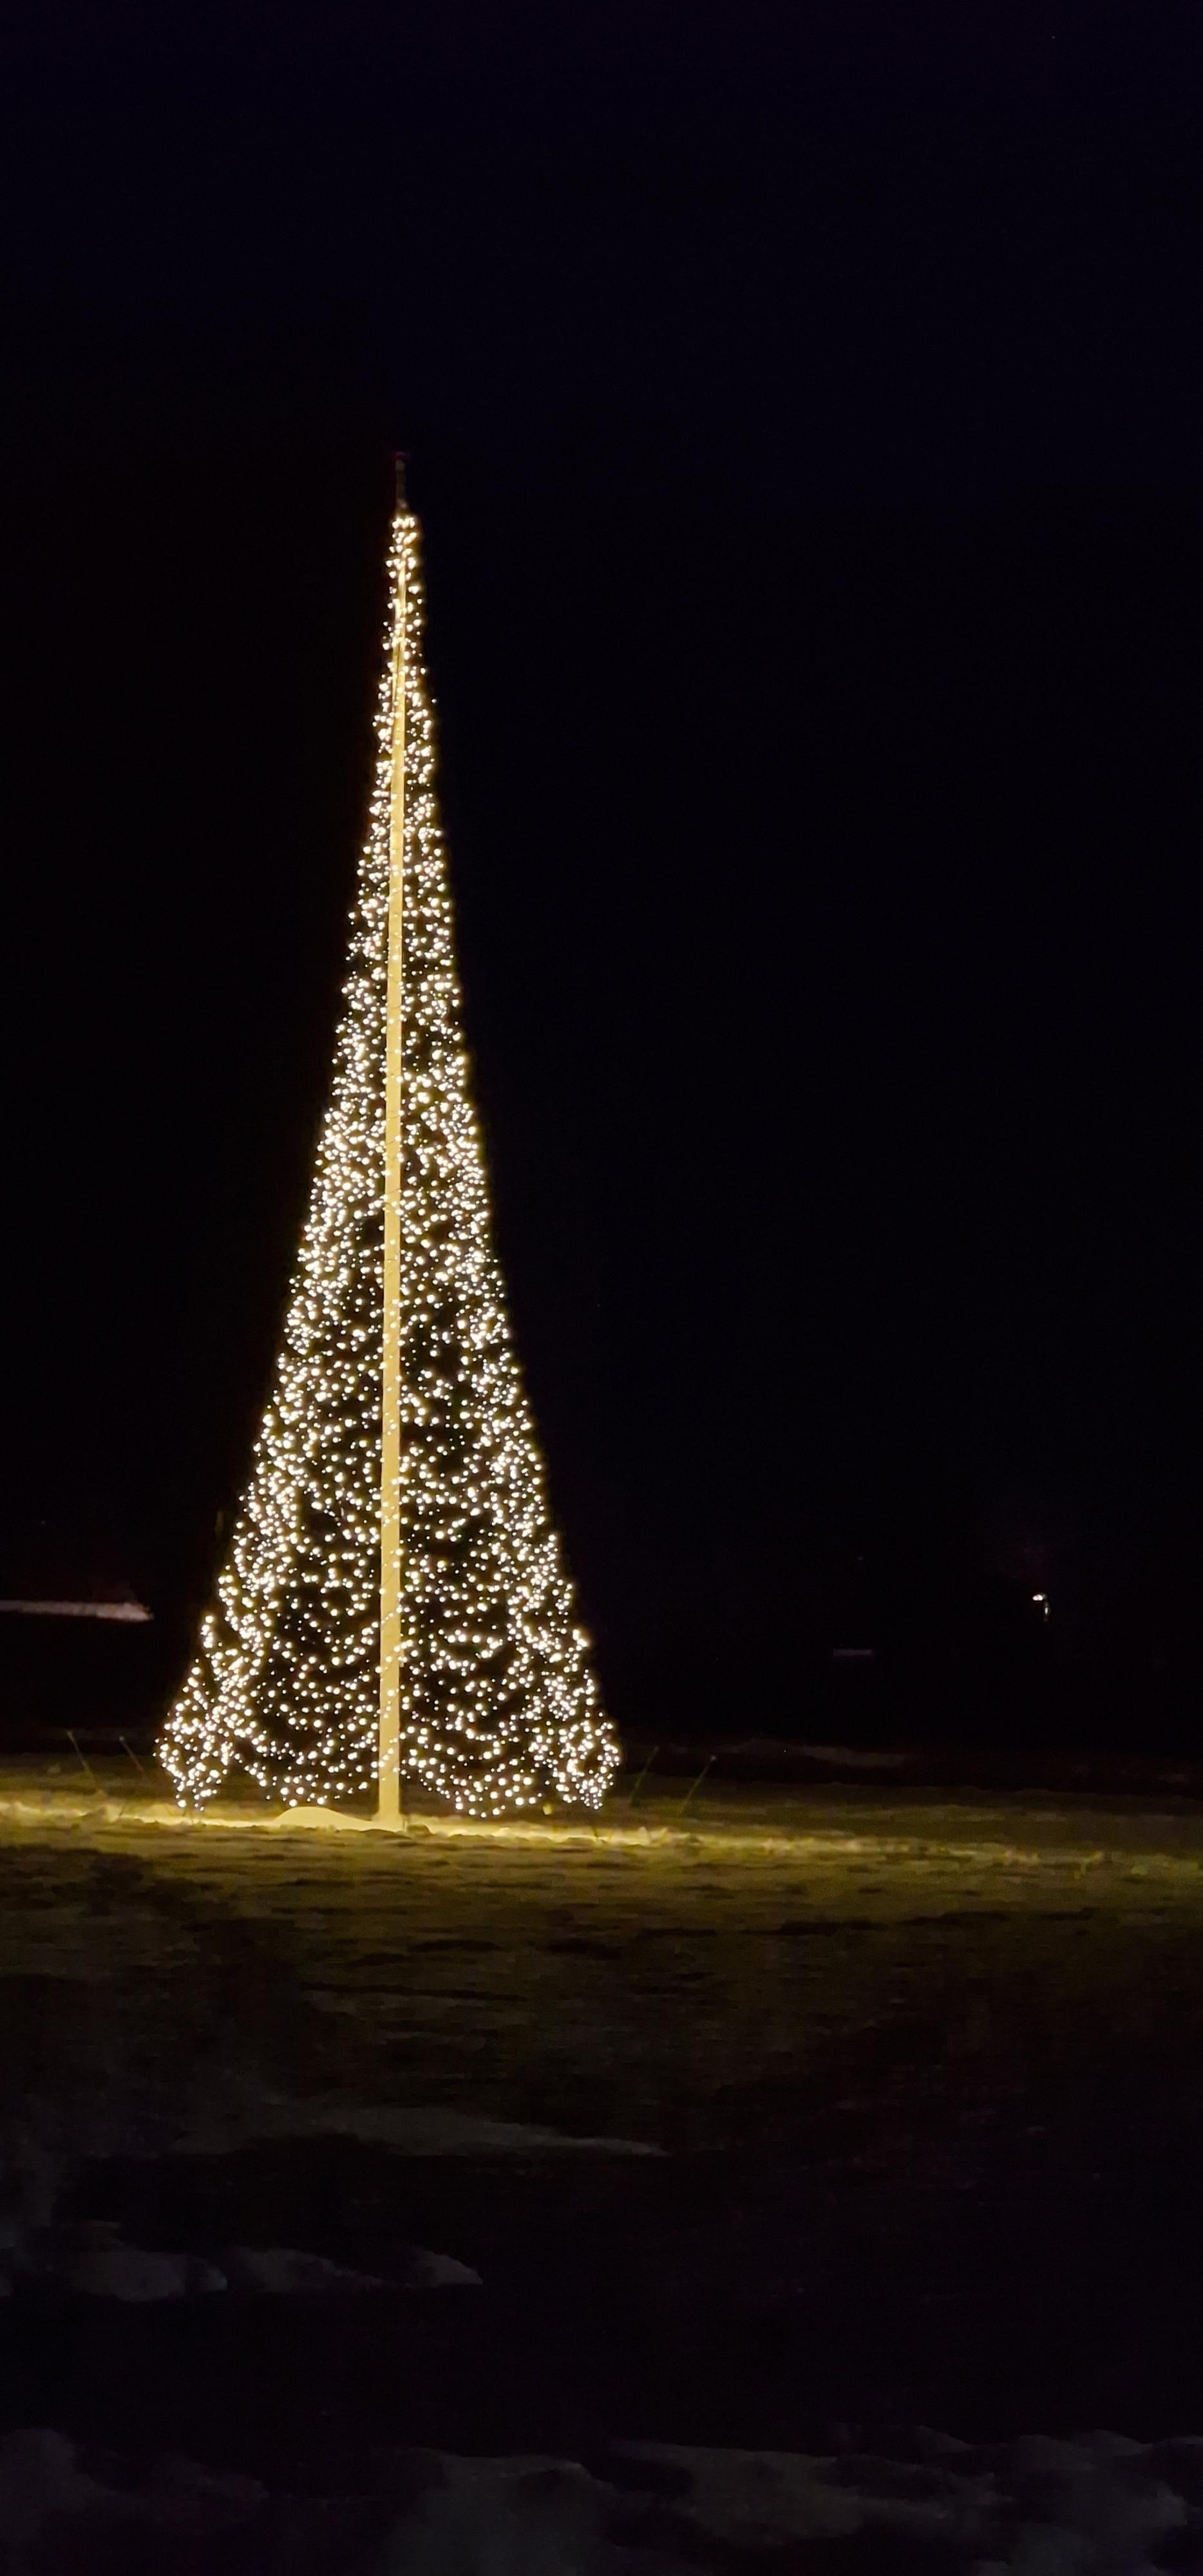 Lys i juletræet